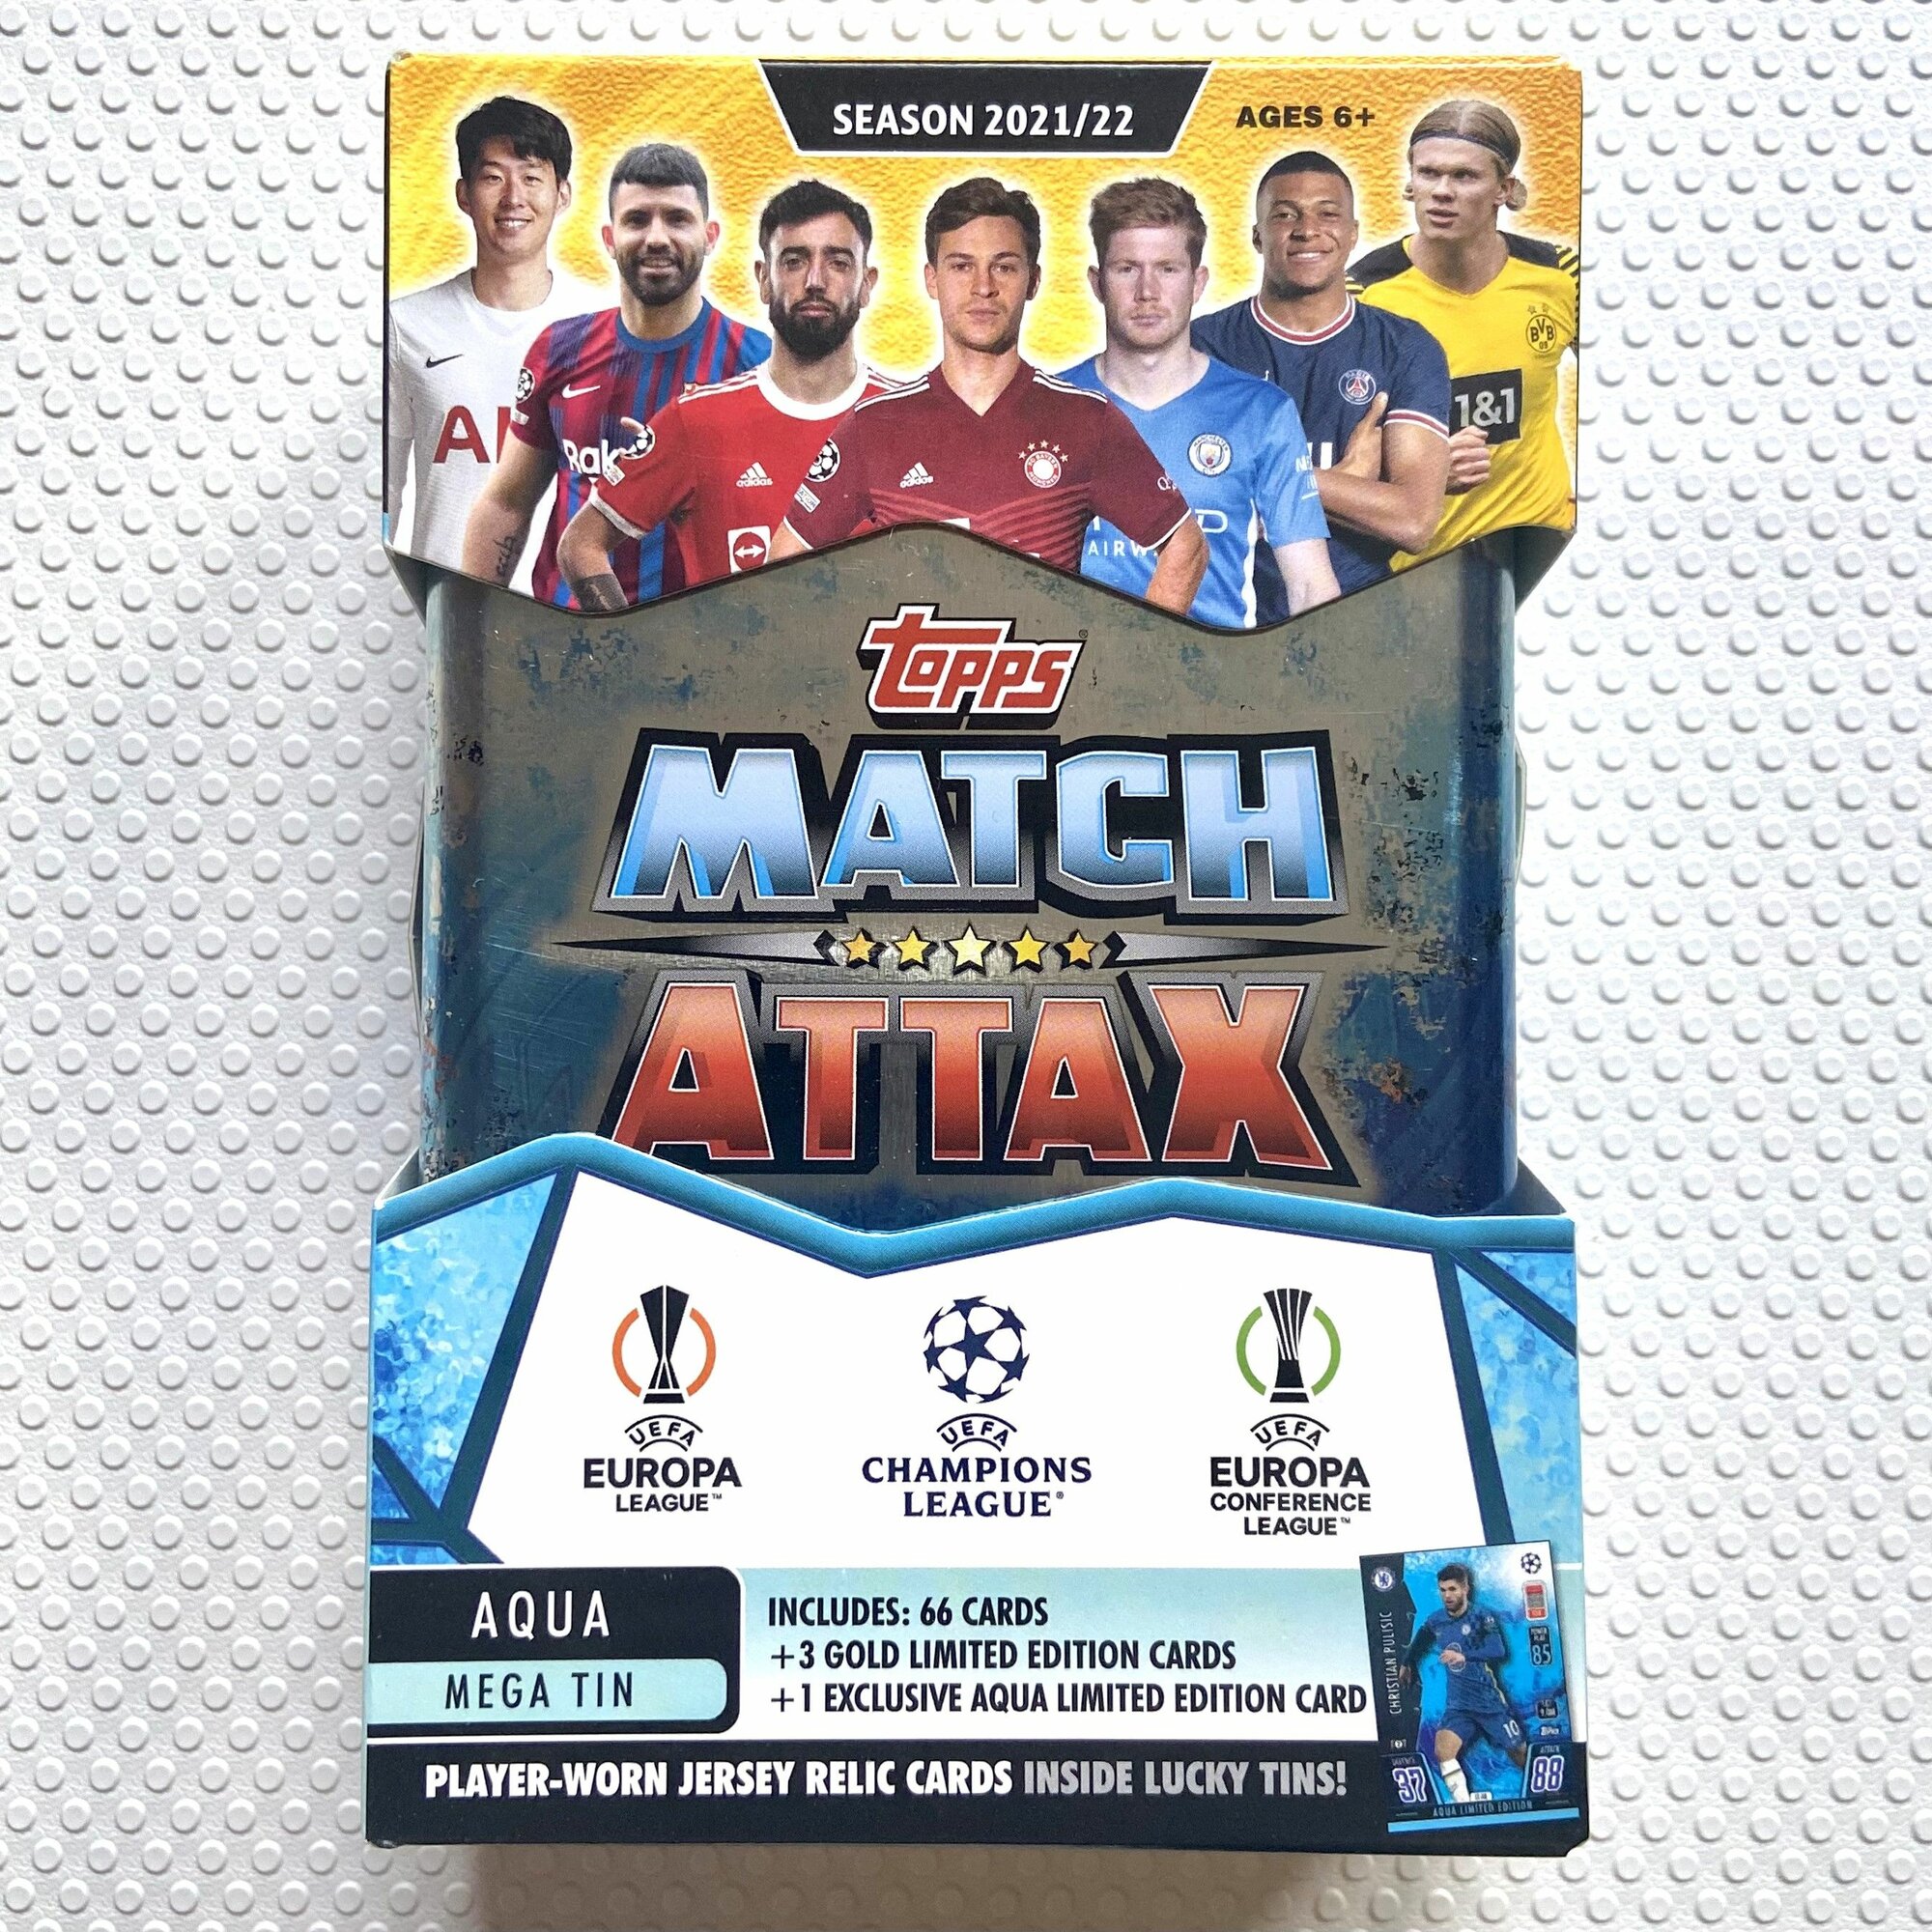 Коробка карточек Topps Match Attax Лига Чемпионов УЕФА. Набор Aqua Mega Tin футбольных коллекционных карт любителям панини.